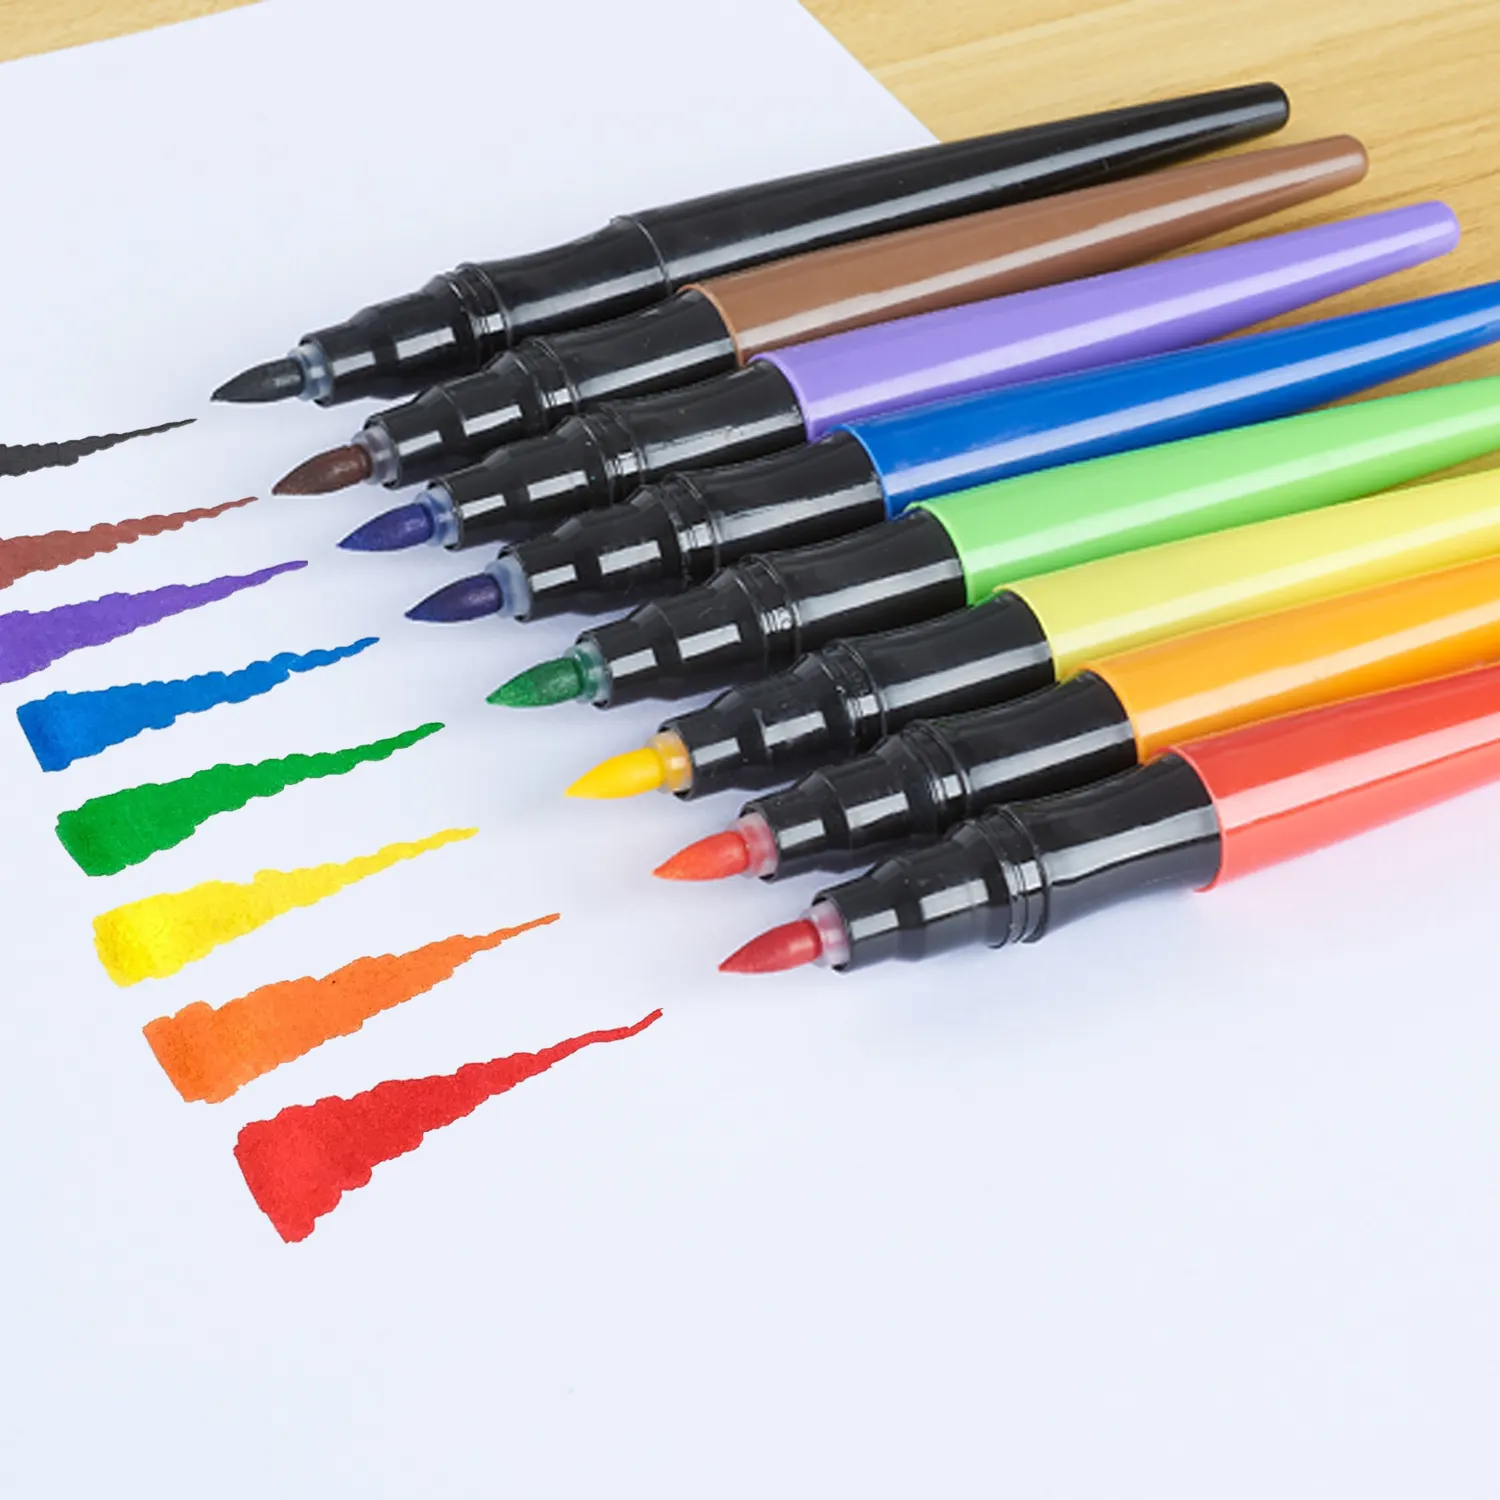 مجموعة أقلام تلوين بأربعة ألوان للأطفال والكبار من أقلام فرشاة قابلة للدمج لتحديد الألوان في الكتب والرسم على الرسومات